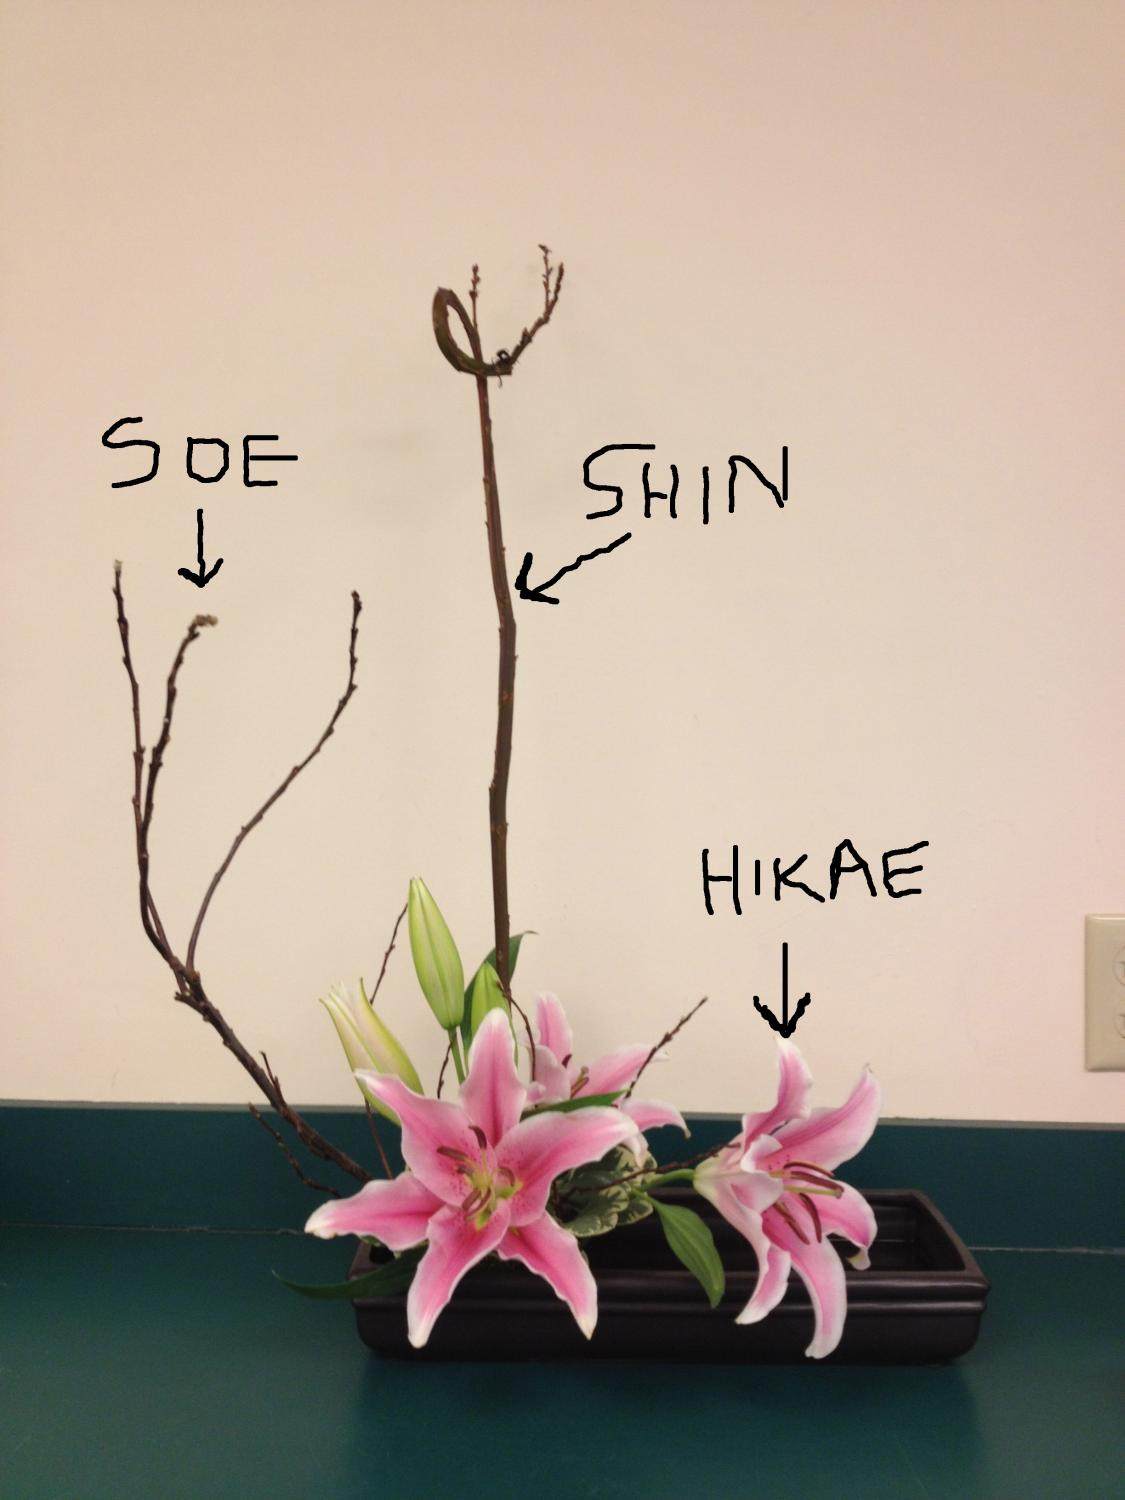 3 εύκολα βήματα για να δημιουργήσετε ένα Ikebana ιαπωνικό Floral Design